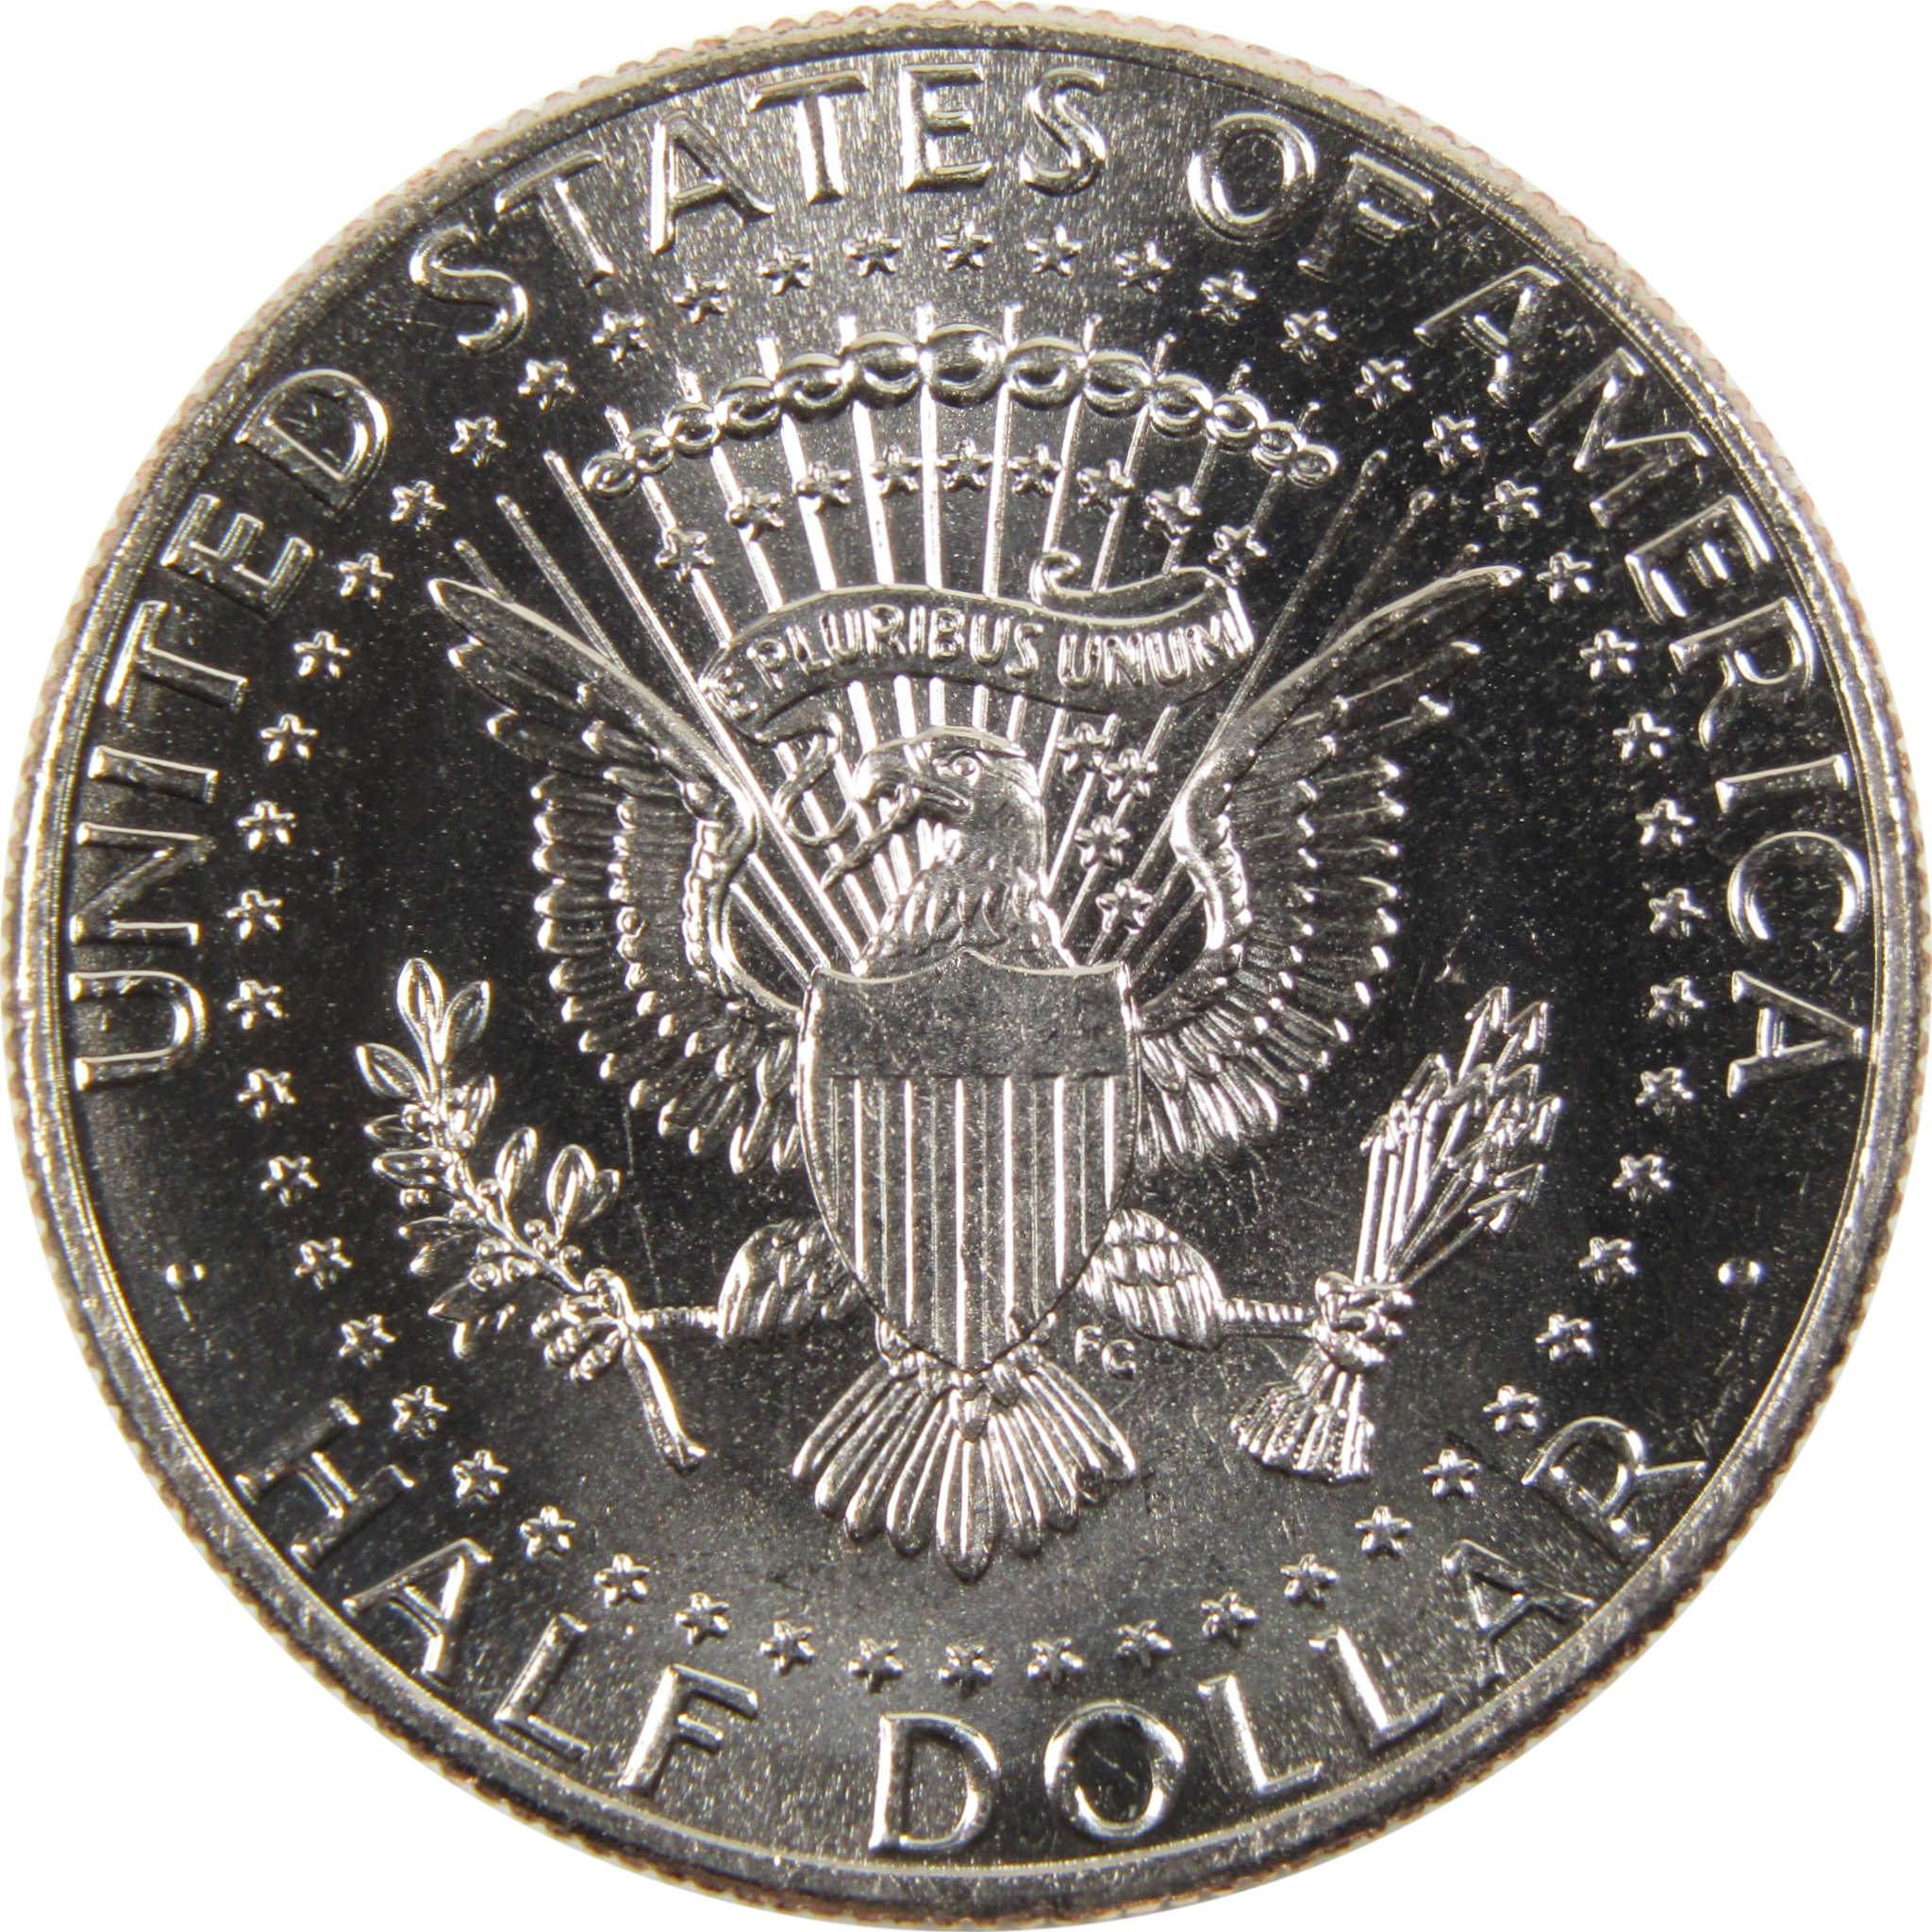 2020 P Kennedy Half Dollar BU Uncirculated Clad 50c Coin